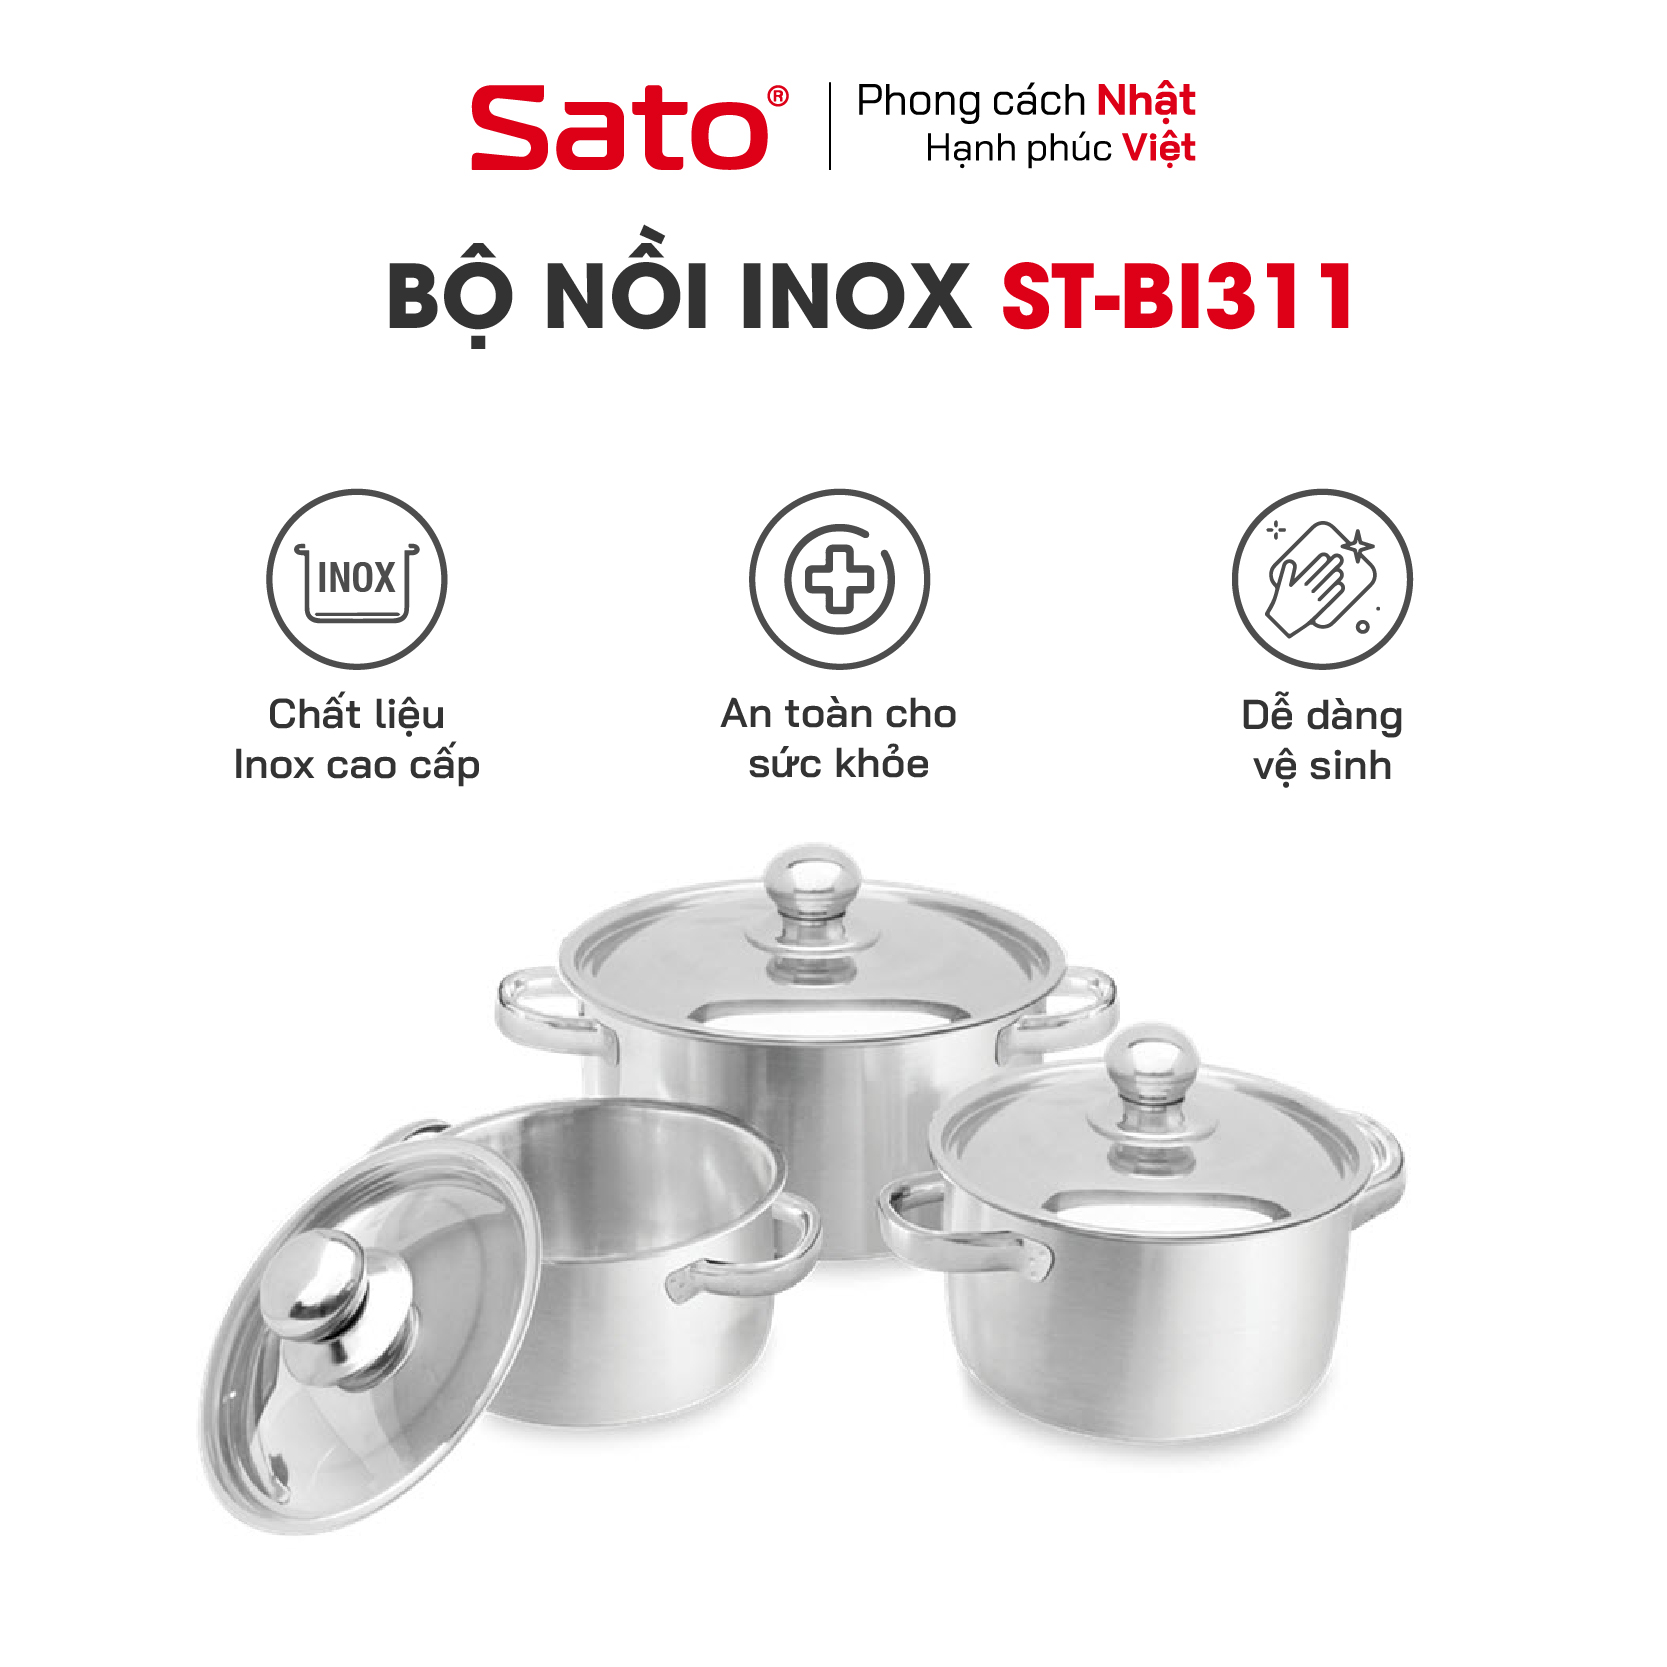 Bộ nồi inox 3 đáy SATO ST-BI311 - Cấu tạo đáy 3 lớp truyền nhiệt nhanh, giữ nhiệt tốt, hạn chế cháy khét thực phẩm - Miễn phí vận chuyển toàn quốc - Hàng chính hãng